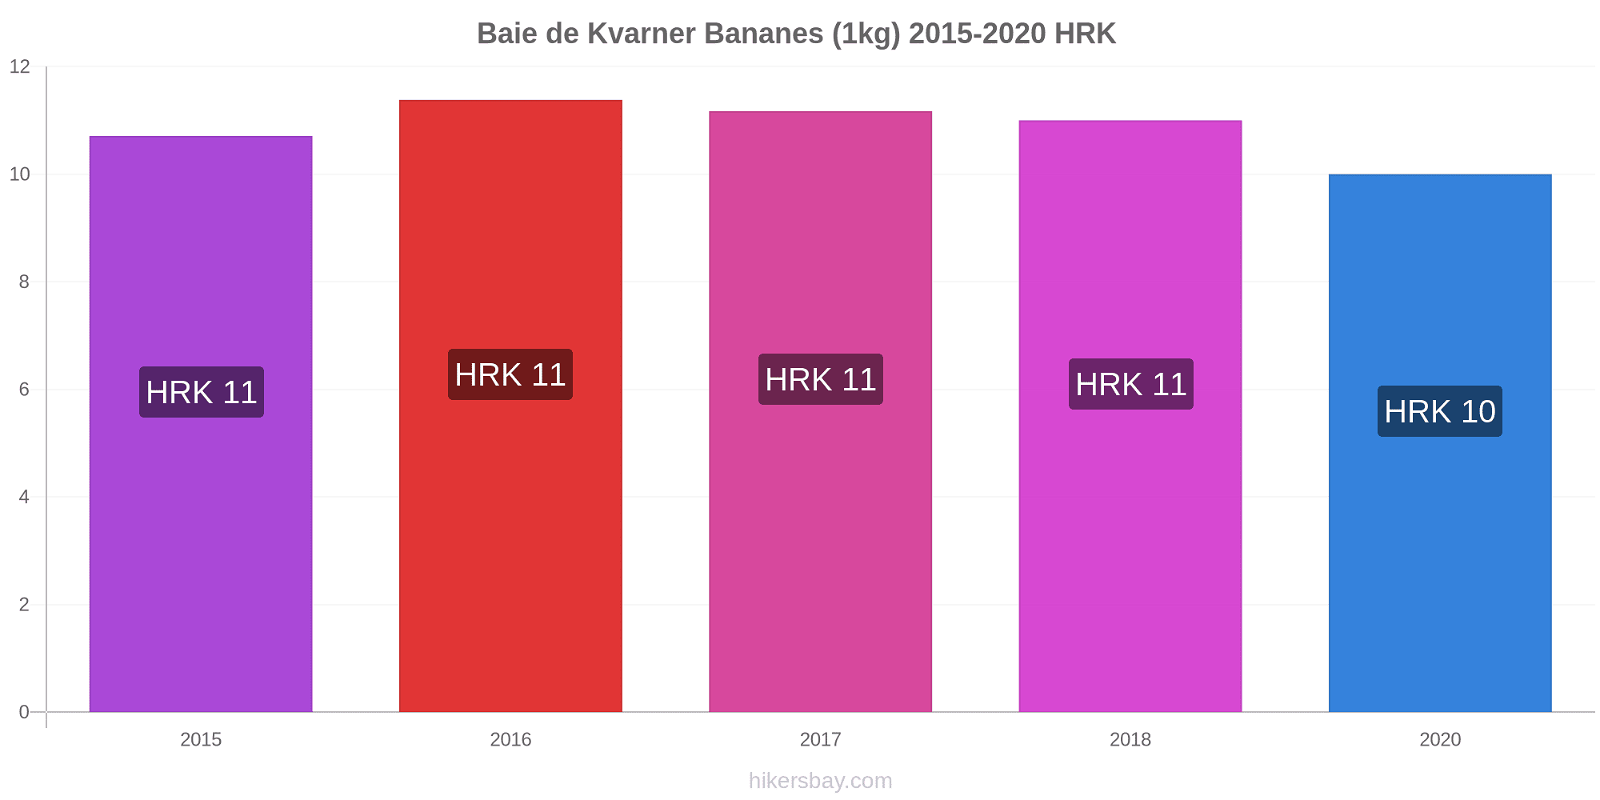 Baie de Kvarner changements de prix Bananes (1kg) hikersbay.com